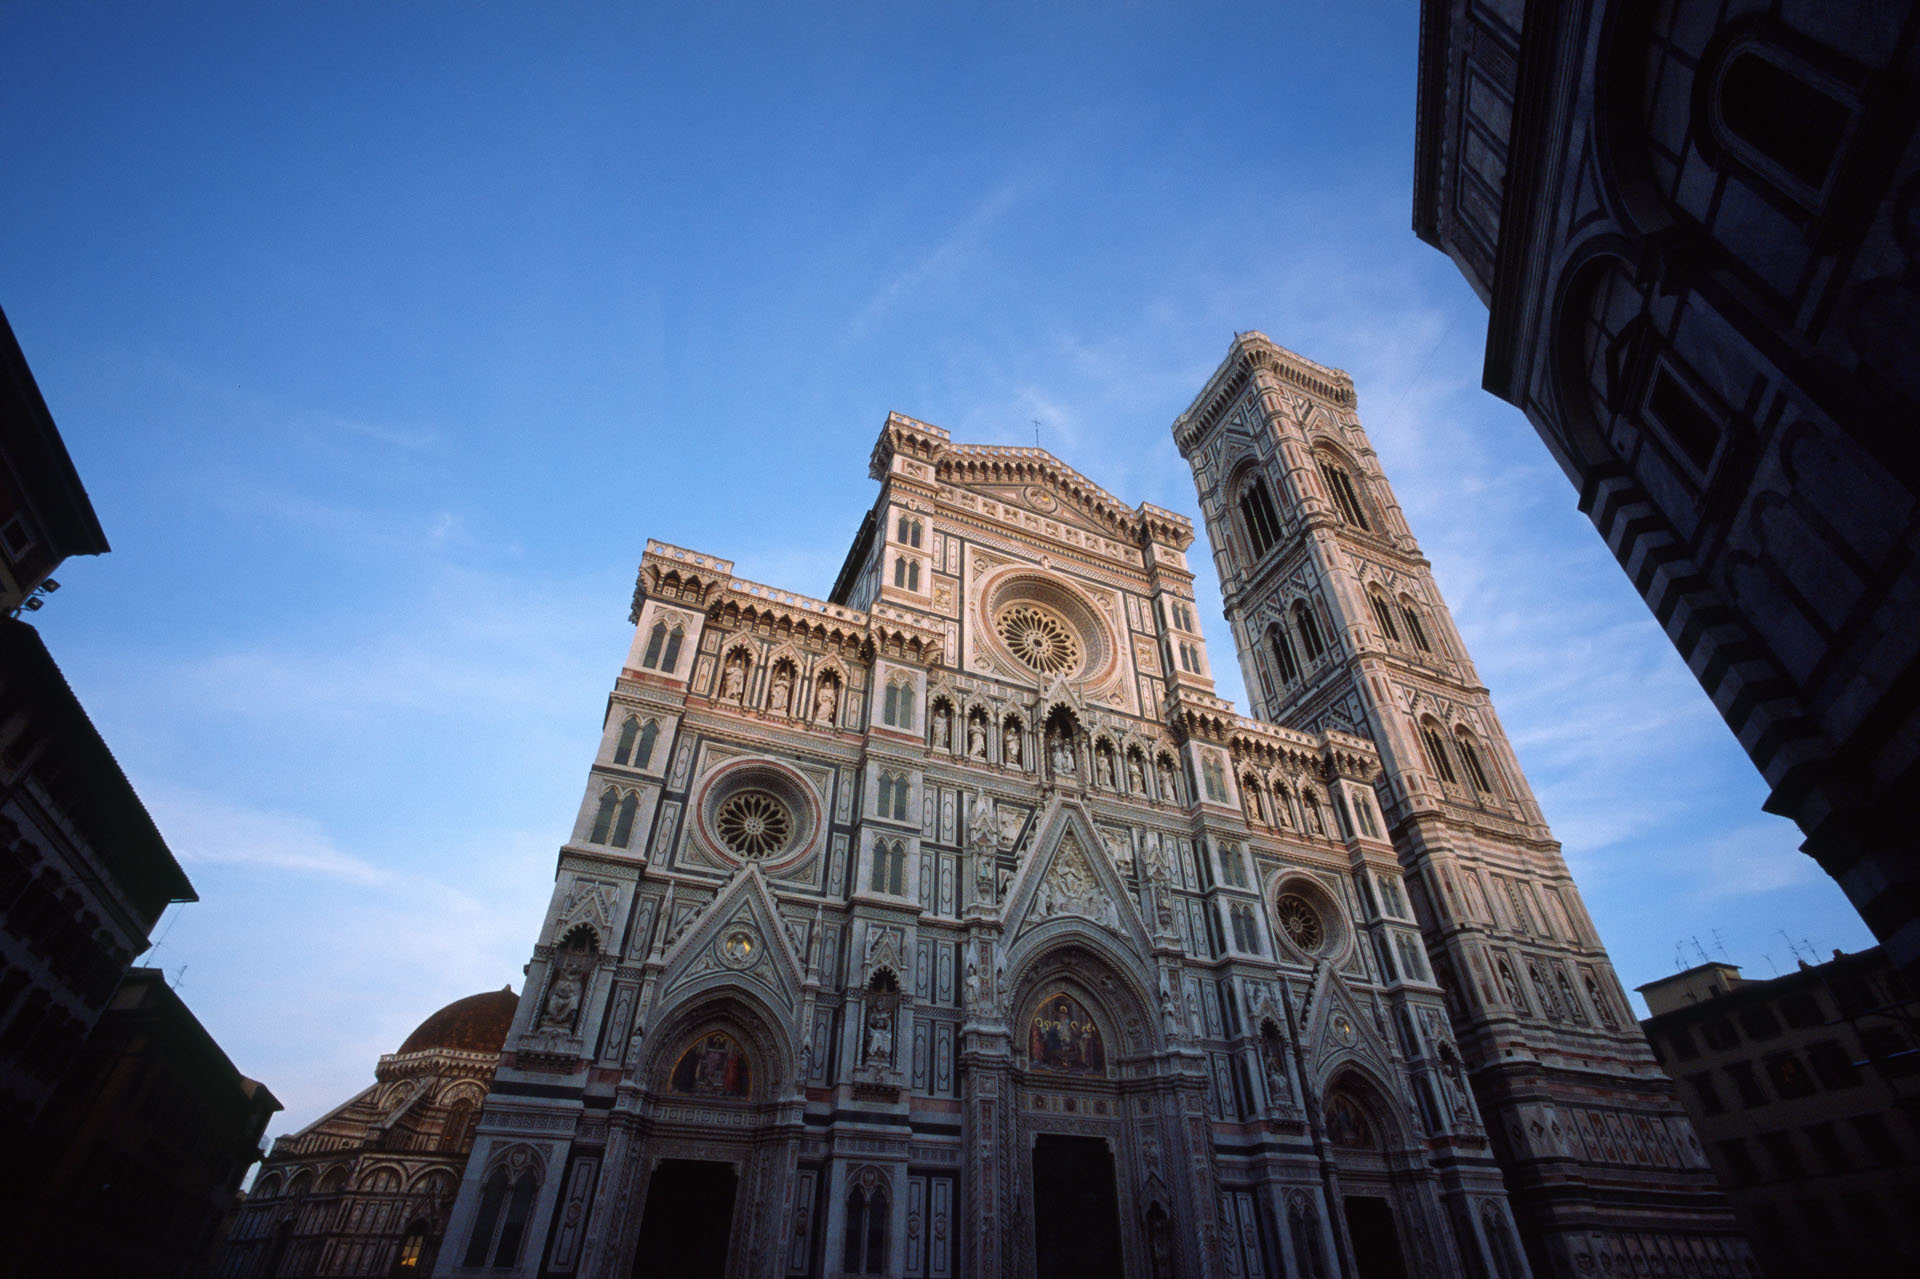 Basilica of Santa Maria del Fiore in Florence